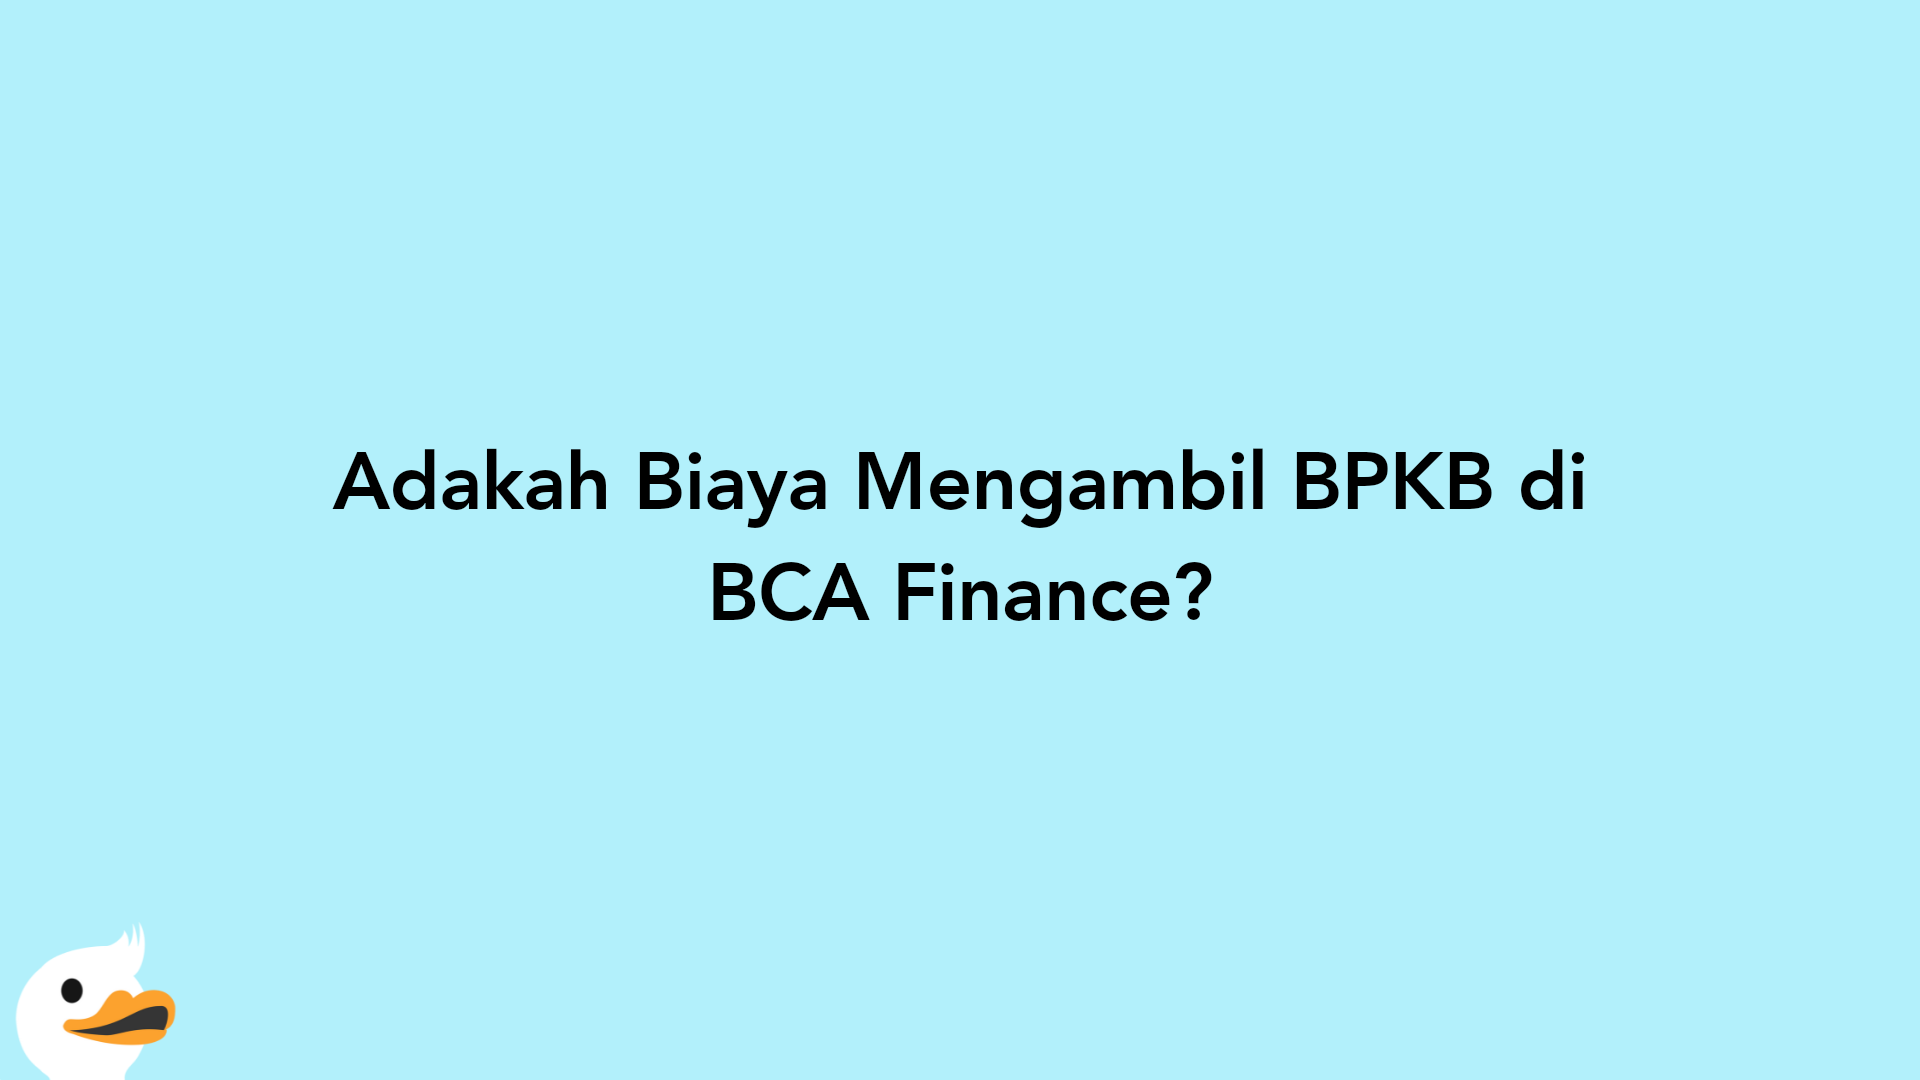 Adakah Biaya Mengambil BPKB di BCA Finance?